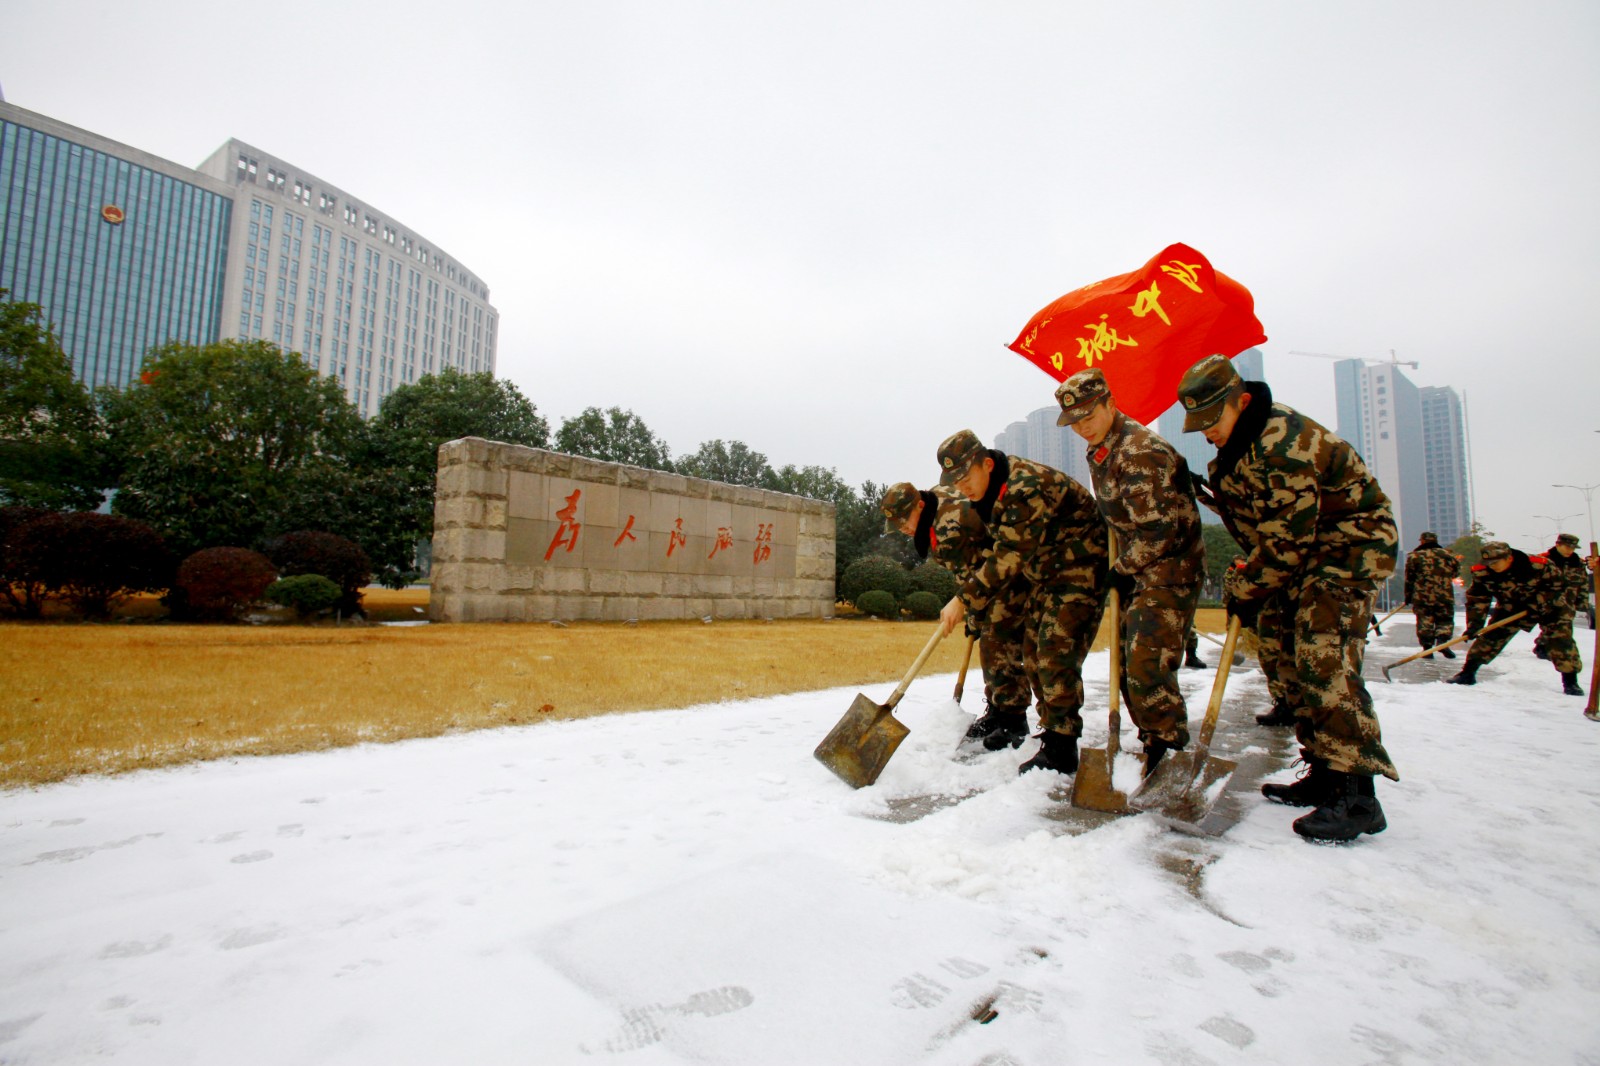 2008年，中队官兵为驻地街道清除积雪。